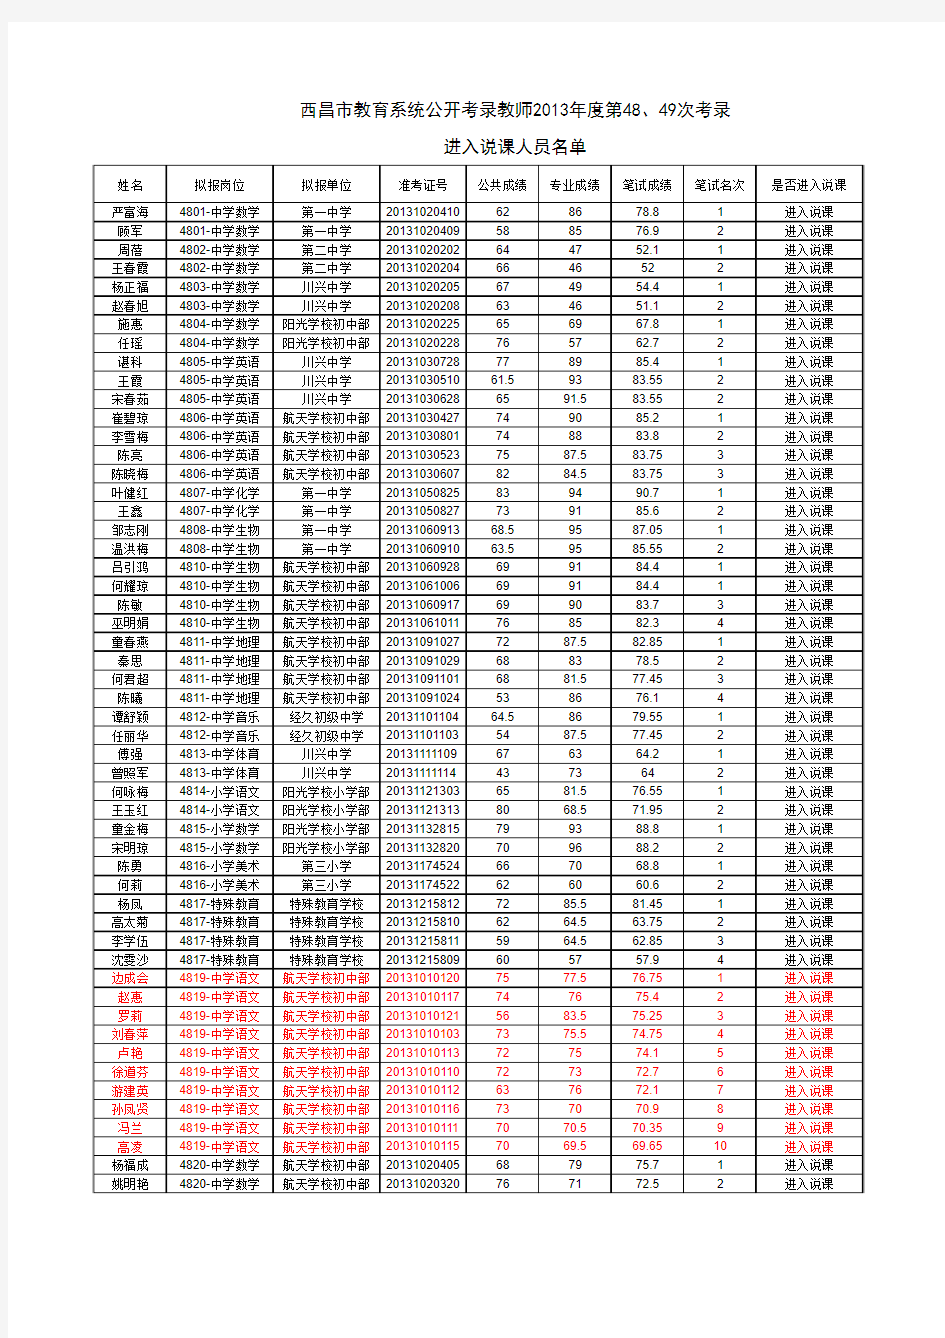 西昌市教育系统公开考录教师2013年度第48、49次考录